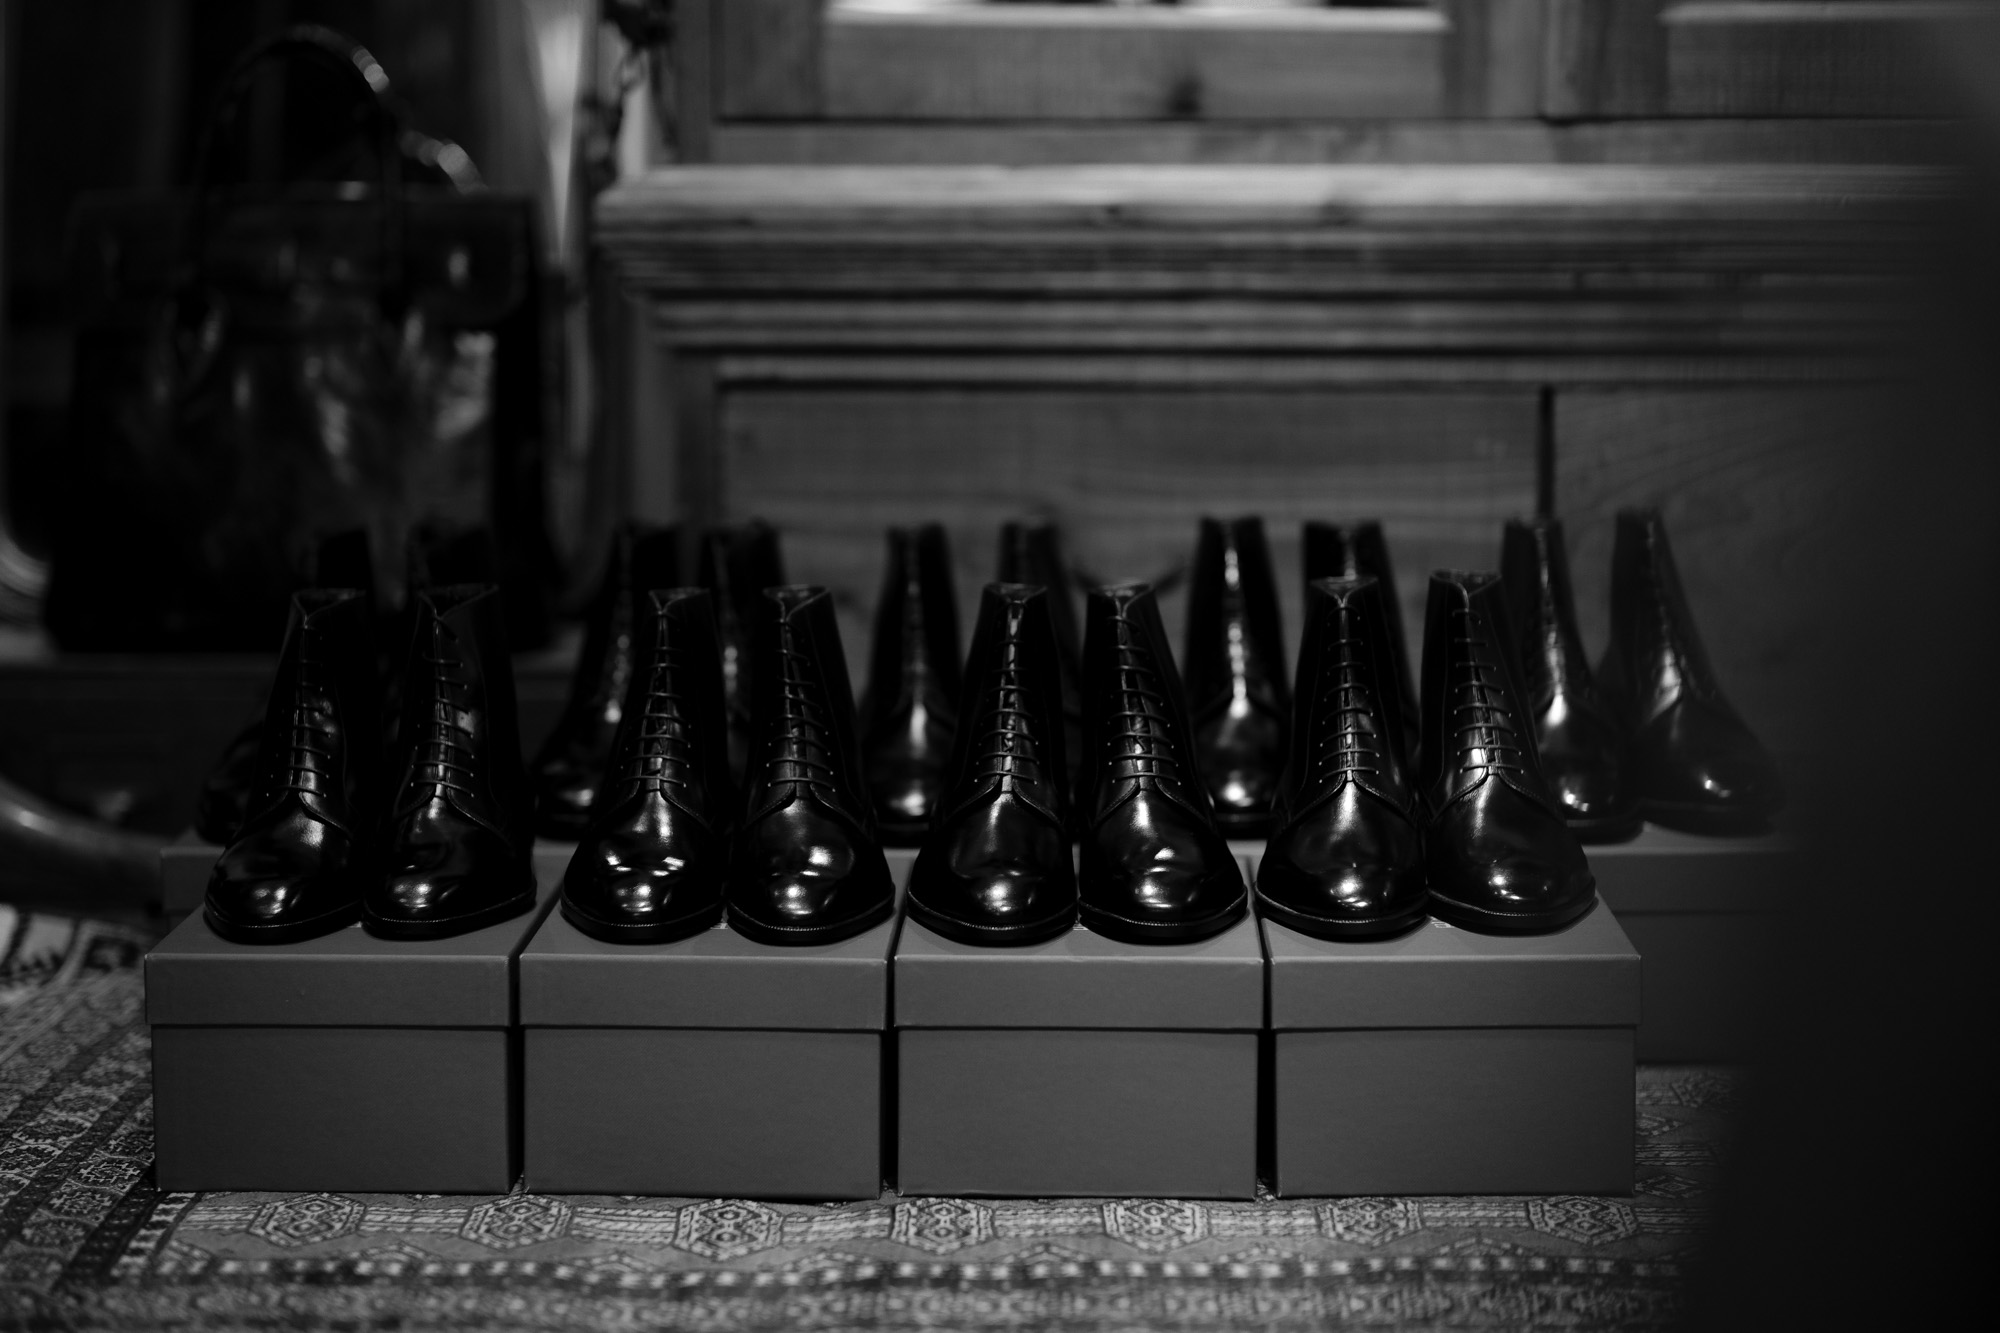 AUBERCY (オーベルシー) HUGH Lace up boots (ヒュー) Du Puy Vitello デュプイ社ボックスカーフ レースアップブーツ NERO (ブラック) made in italy (イタリア製) 2021 春夏 愛知 名古屋 Alto e Diritto altoediritto アルトエデリット ブーツ 編み上げブーツ ドレスブーツ